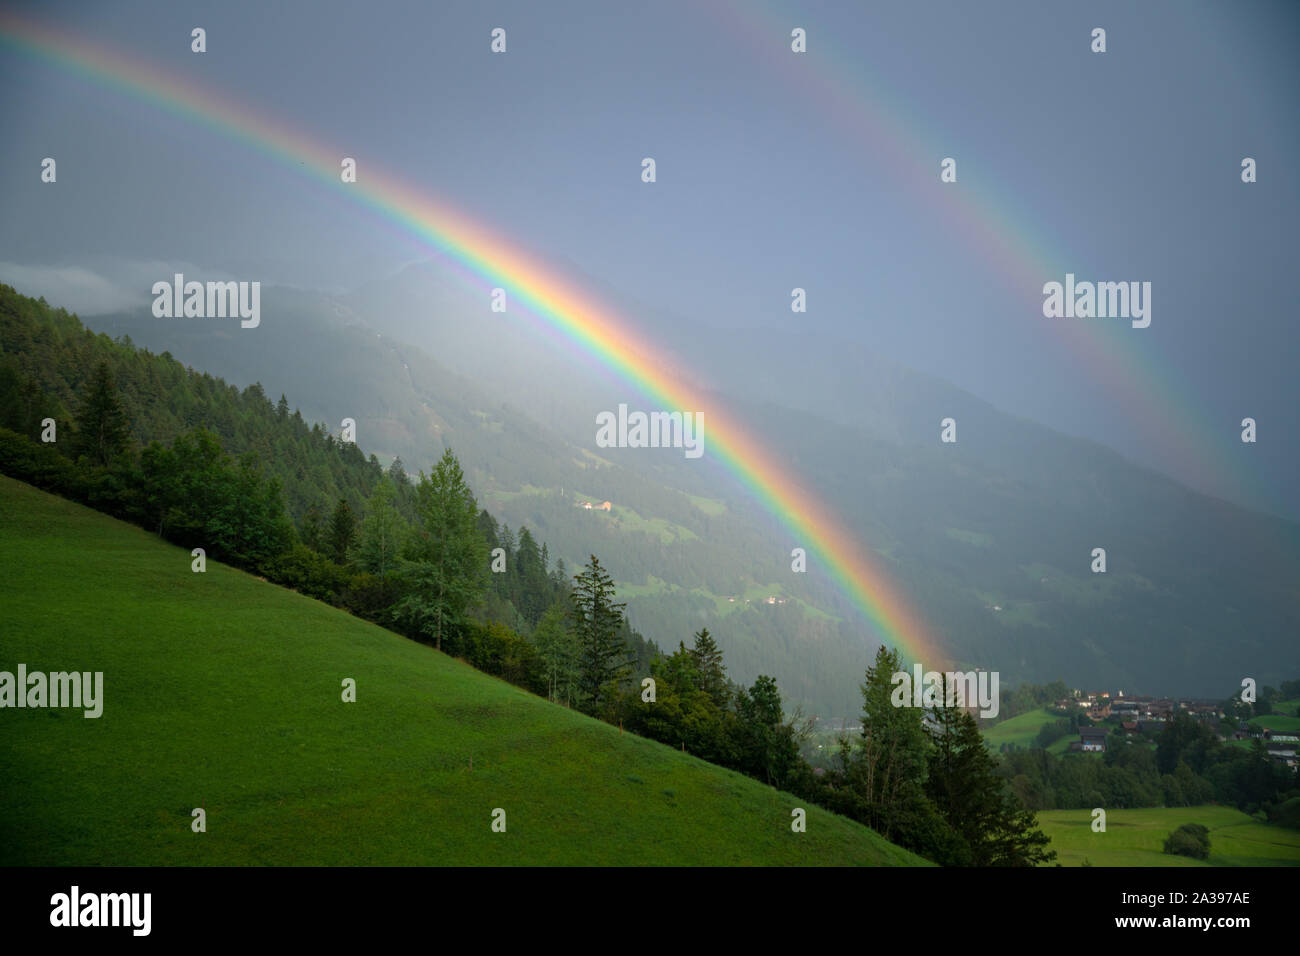 Double Rainbow over lush alpine landscape, Lienz, Austria Stock Photo